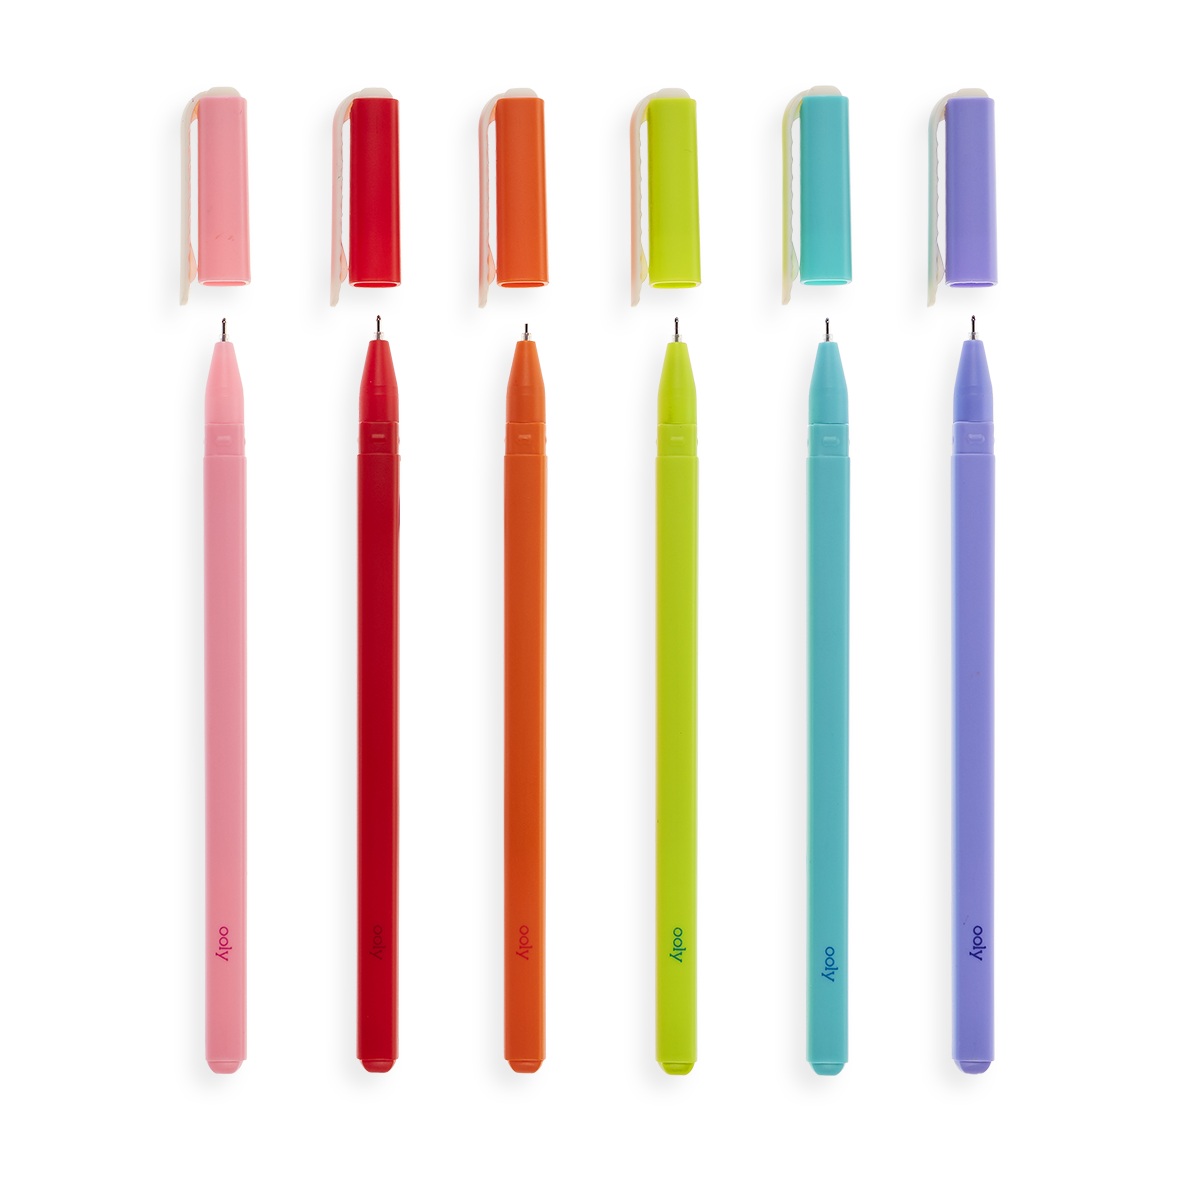 FineLife Premium Gel Pen Set, 20 Count